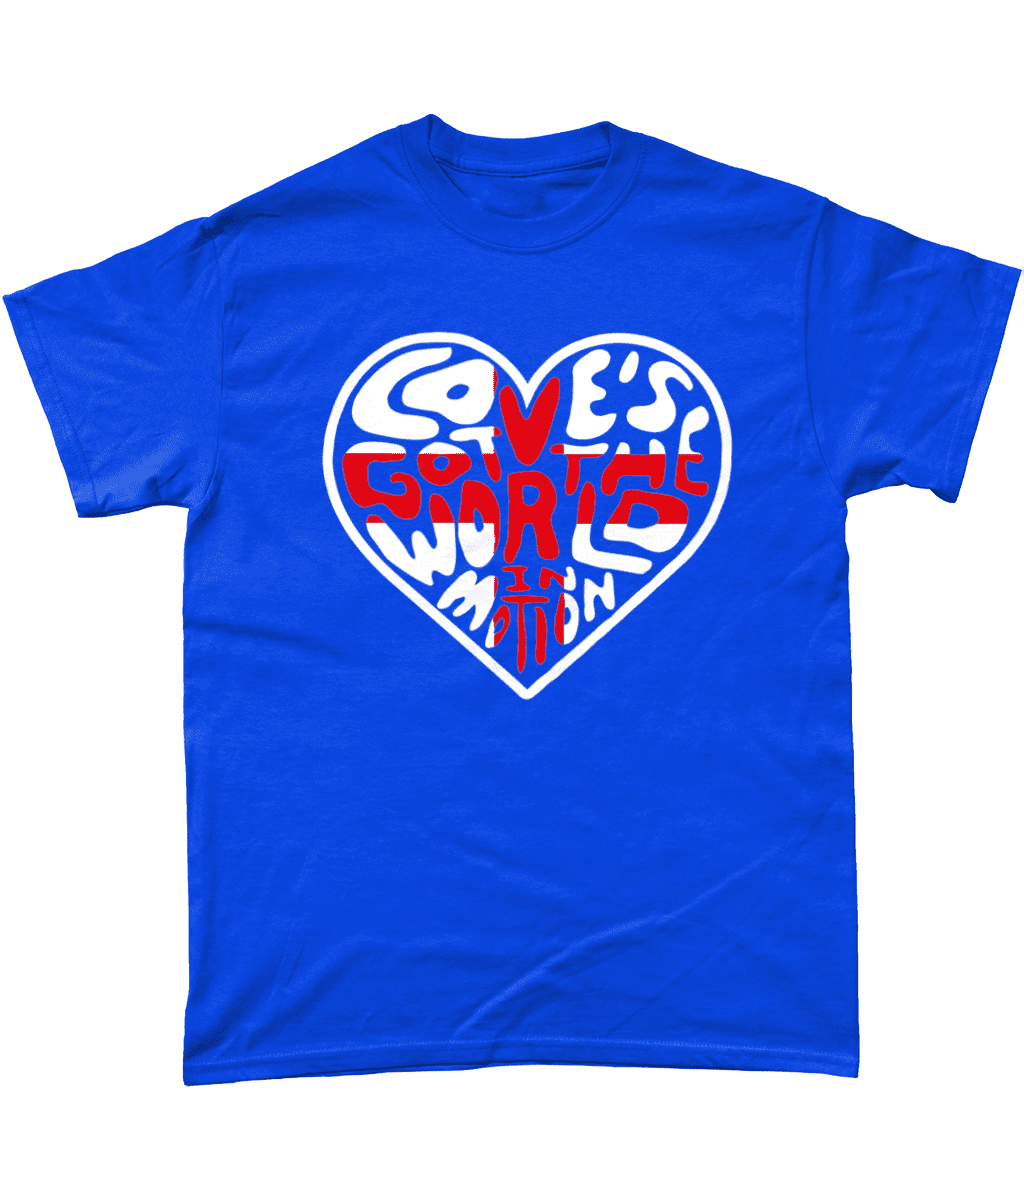 Love's Got the World in Motion New Order England Football John Barnes Men's T-Shirt Design Royal Blue